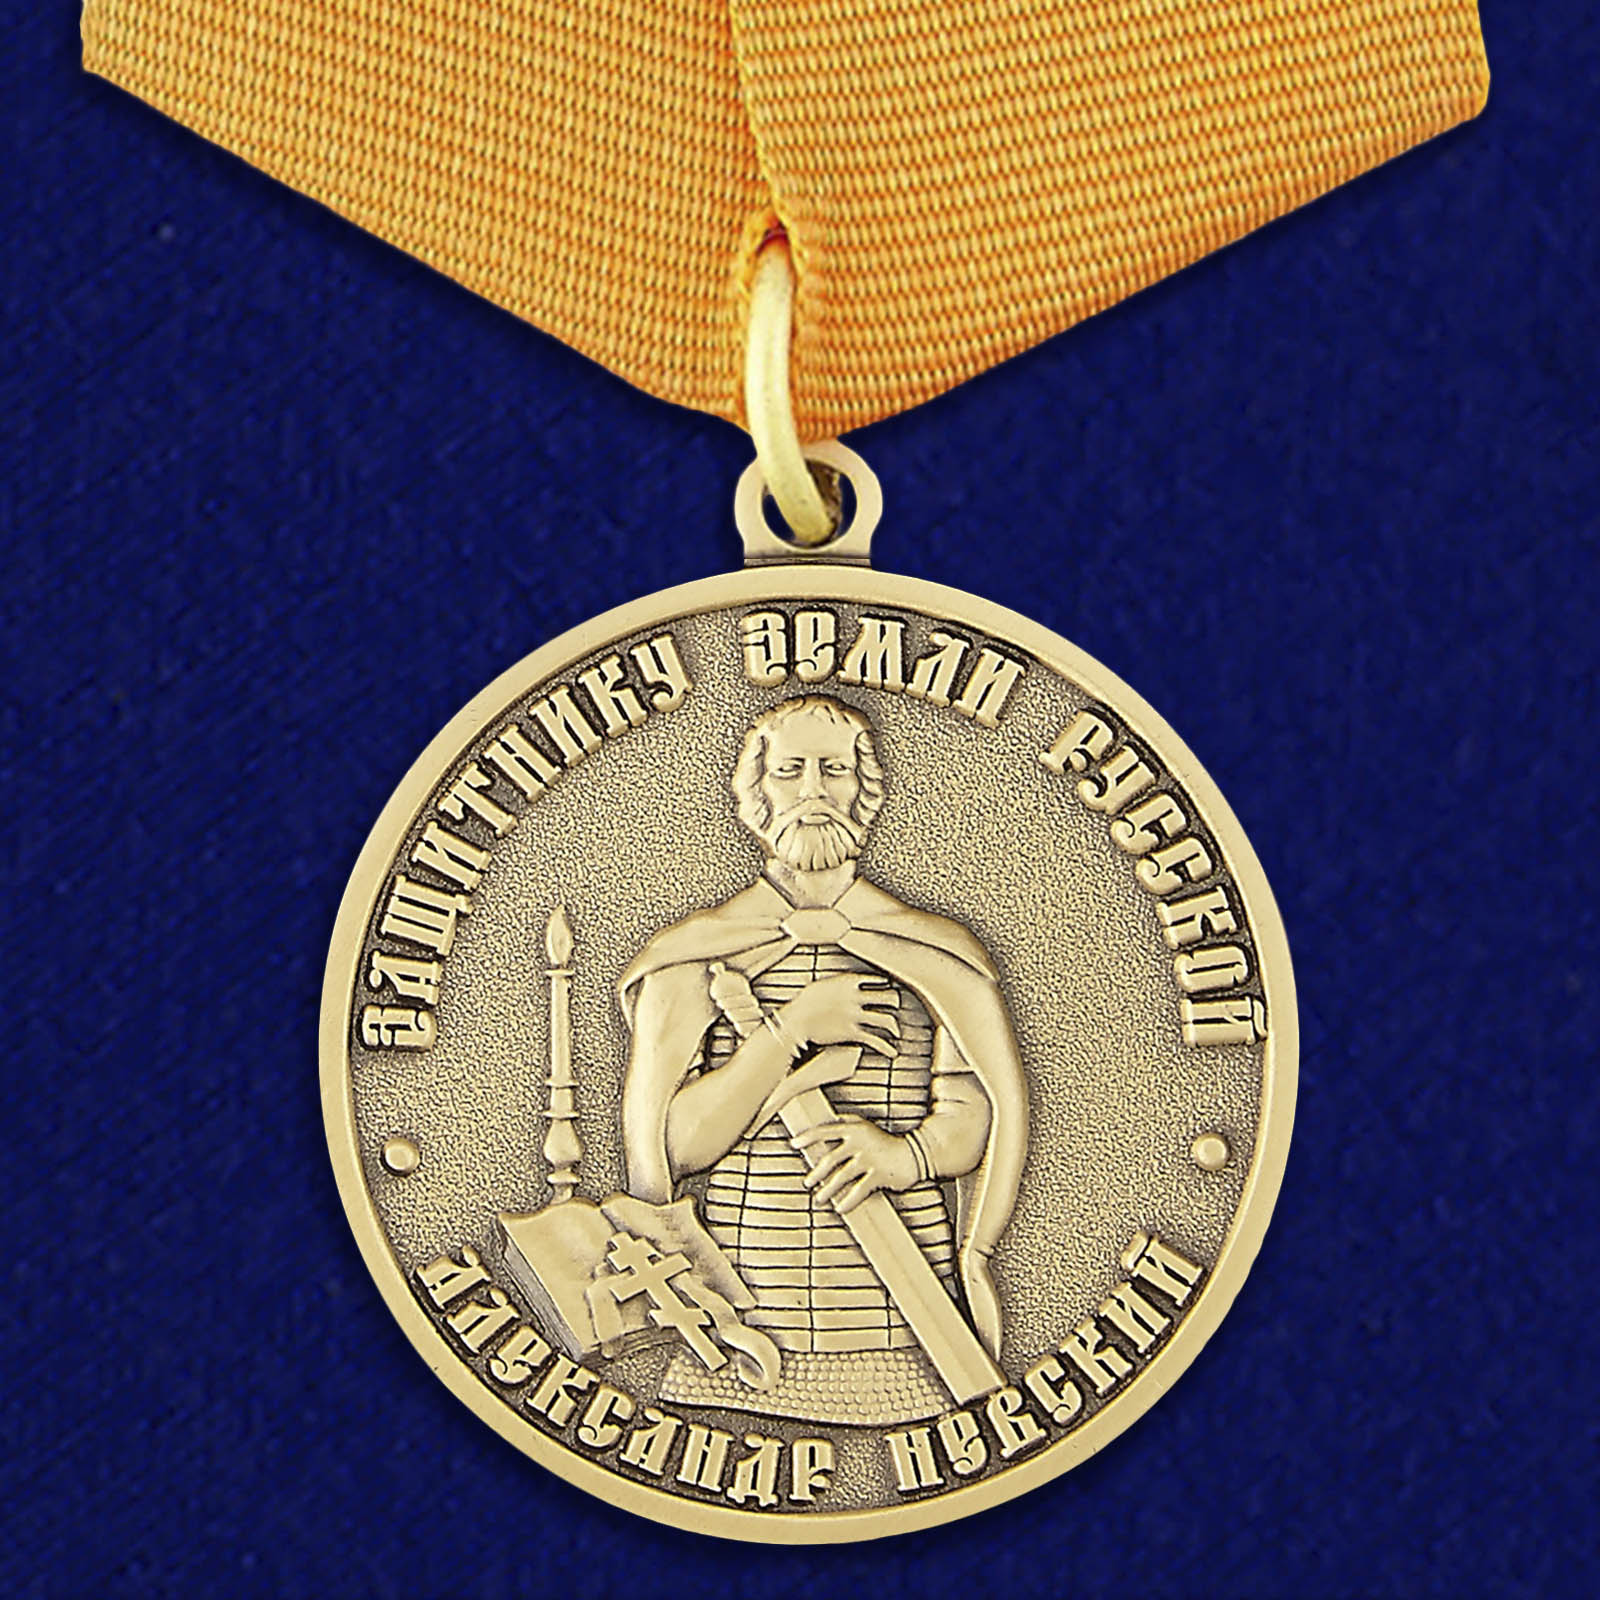 Медаль Александра Невского 